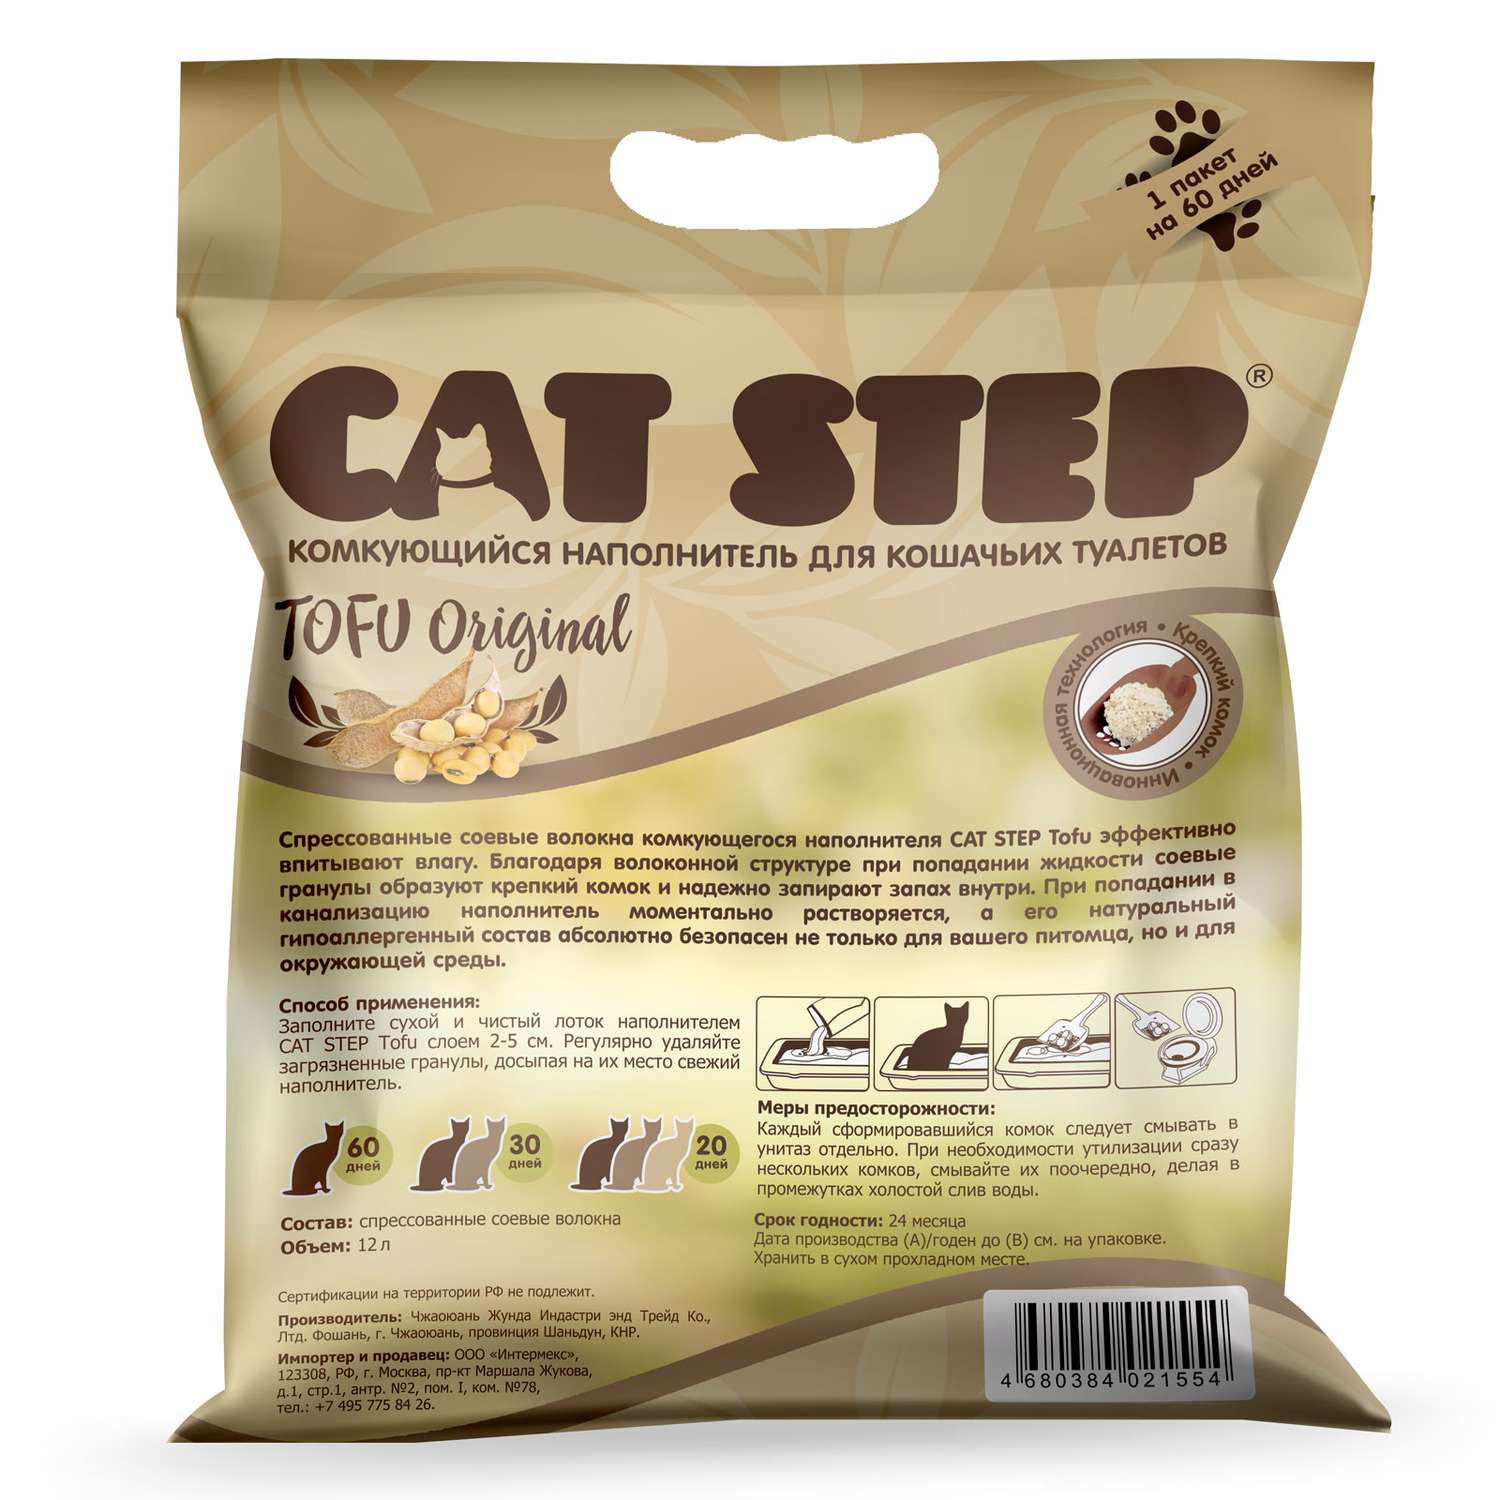 Наполнитель для кошачьего туалета Cat Step Tofu Original комкующийся растительный 12л - фото 2